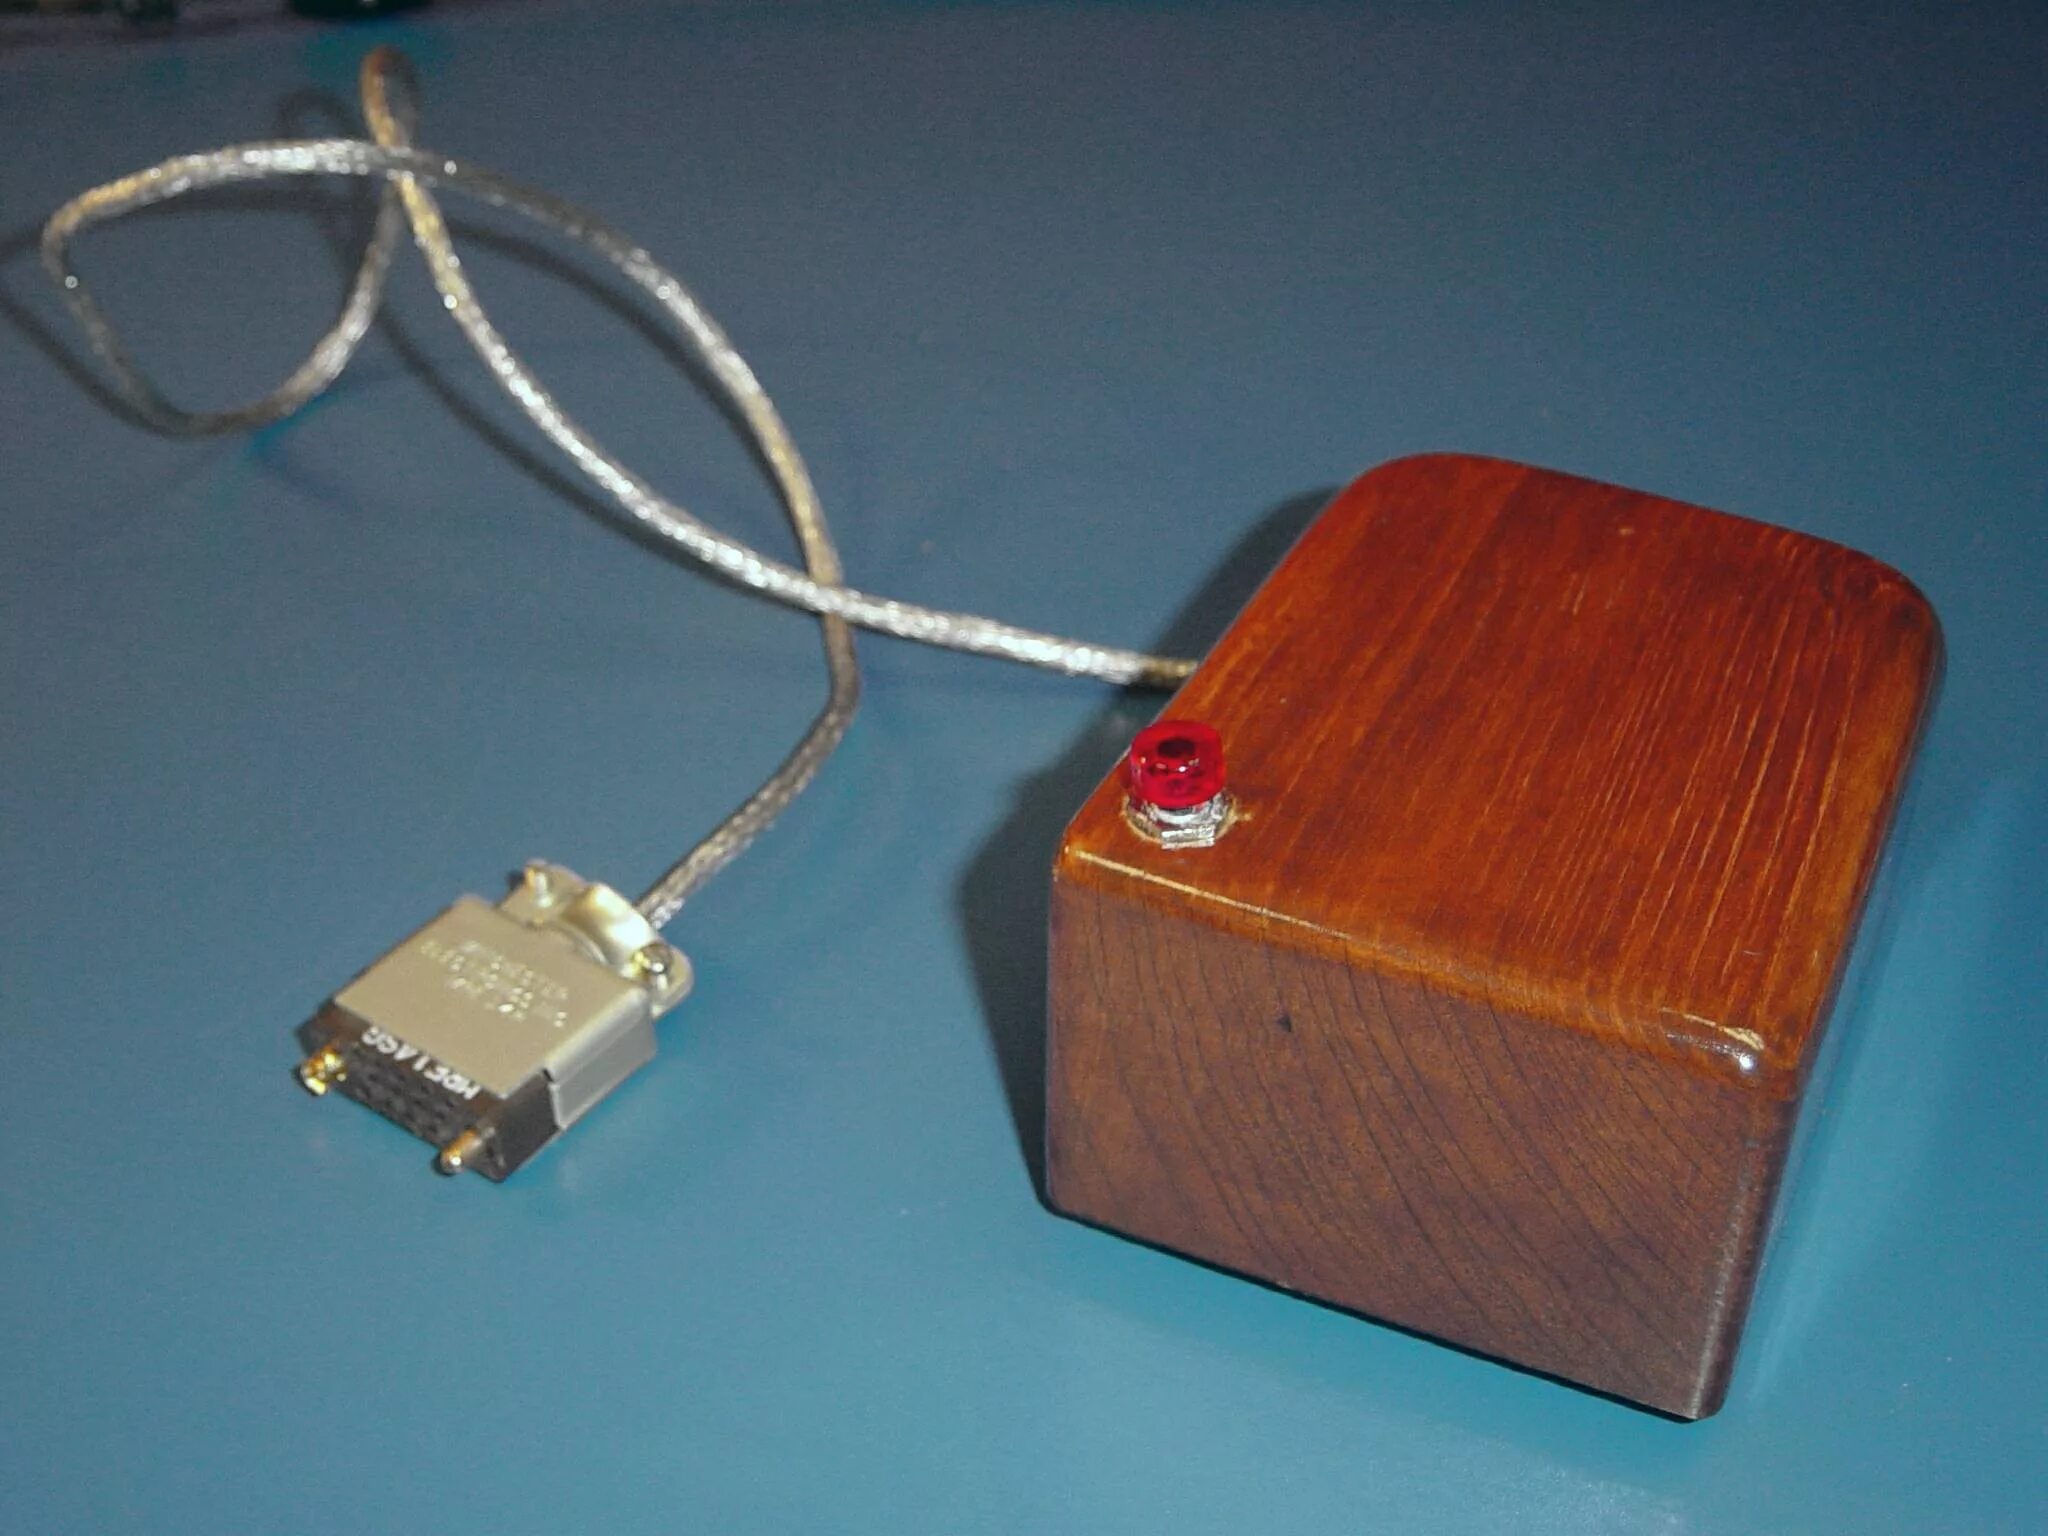 Создание мыши. Дуглас Энгельбарт компьютерная мышь. Первая мышь Дугласа Энгельбарта. Первая компьютерная мышь 1964. Первая мышка.